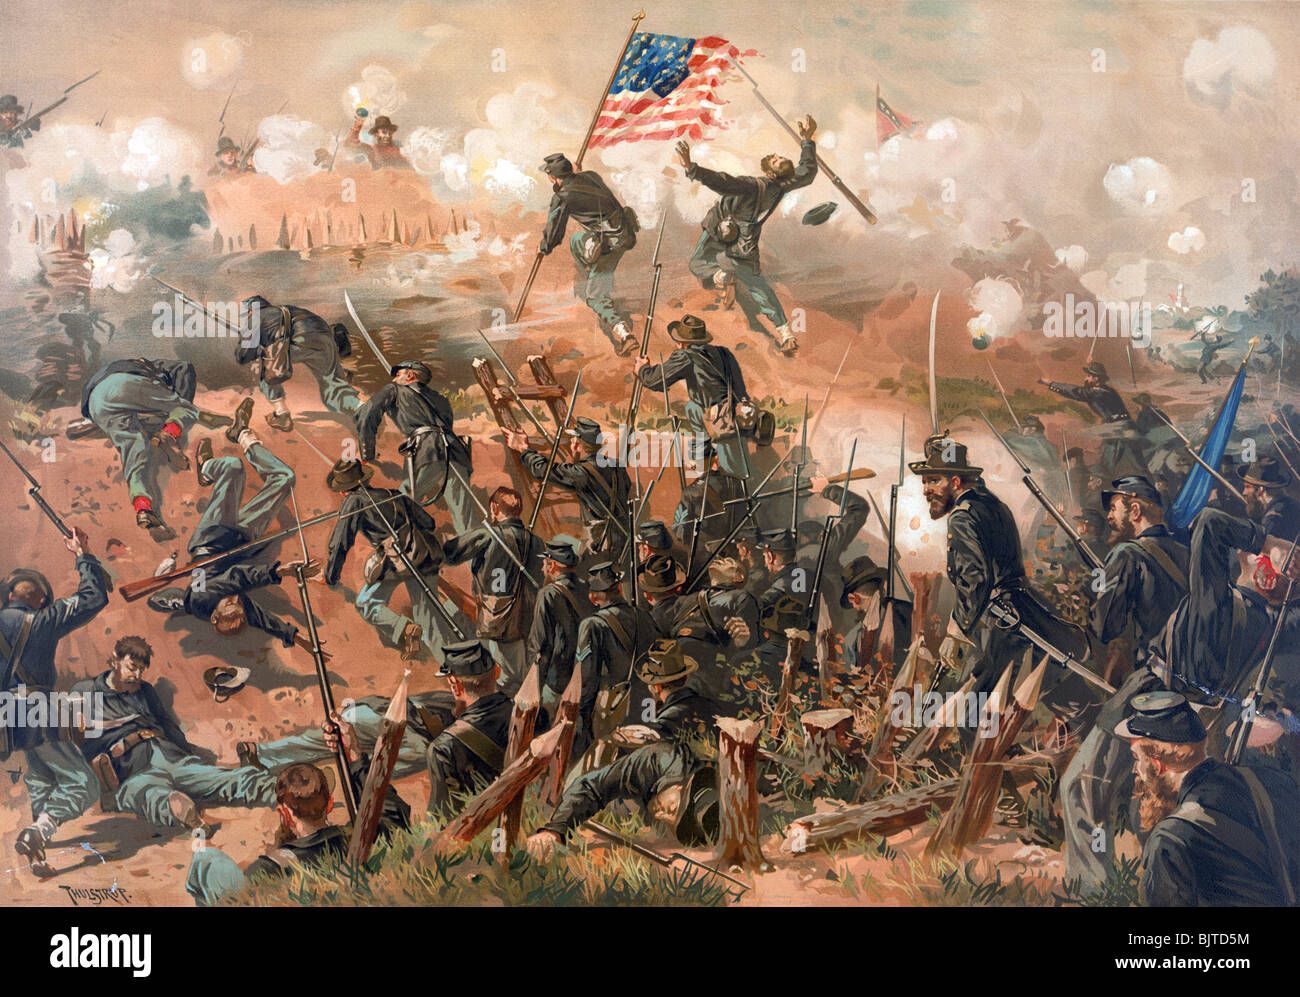 Farbe drucken c1888 Darstellung der Belagerung von Vicksburg (25 Mai - 4. Juli 1863) während die US Civil War. Stockfoto